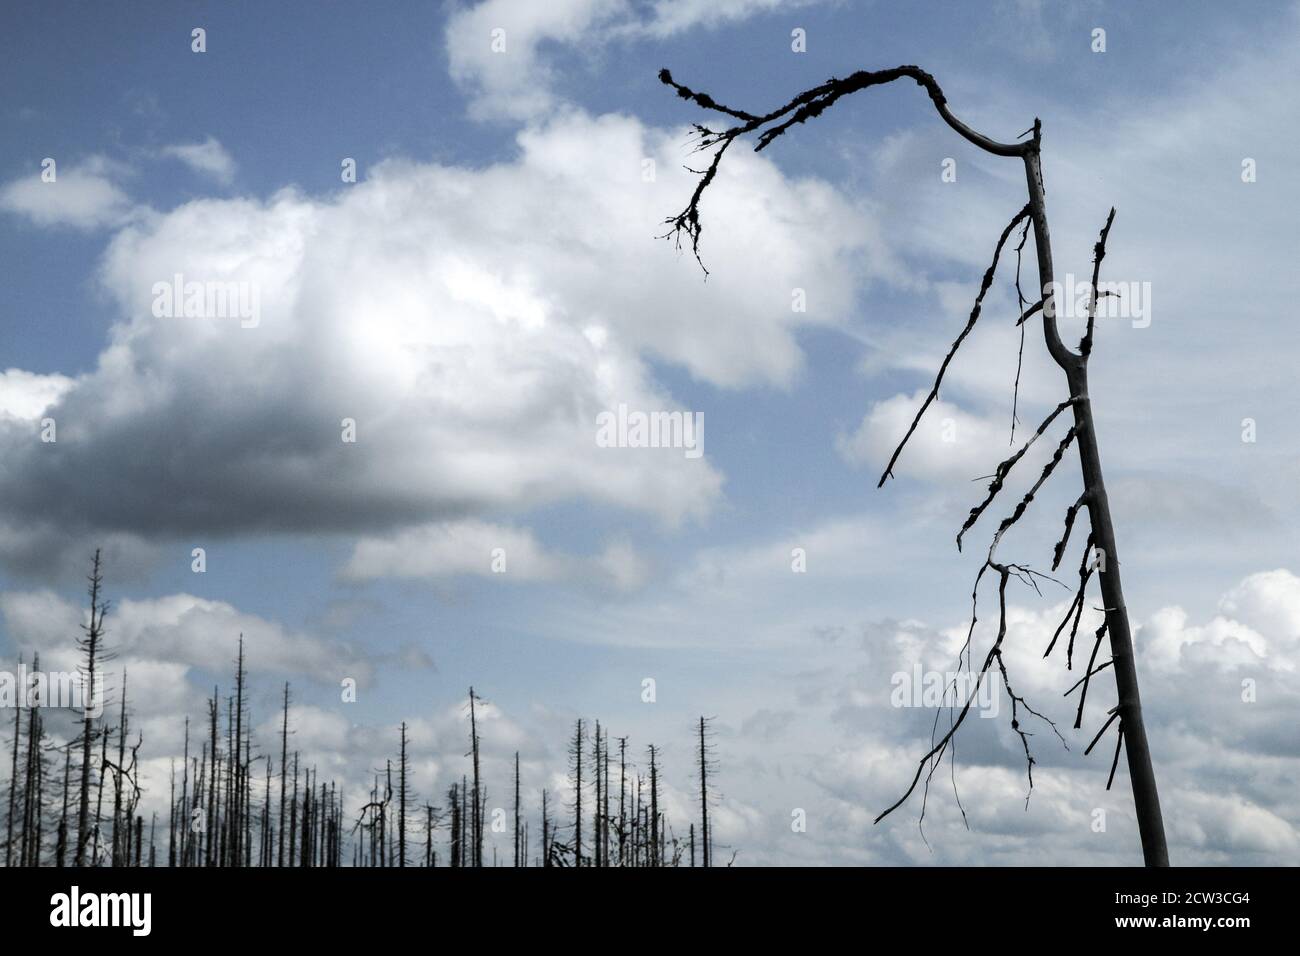 La foresta danneggiata dall'uragano e lasciata rivitalizzare naturalmente senza intervento dell'uomo. Foto Stock